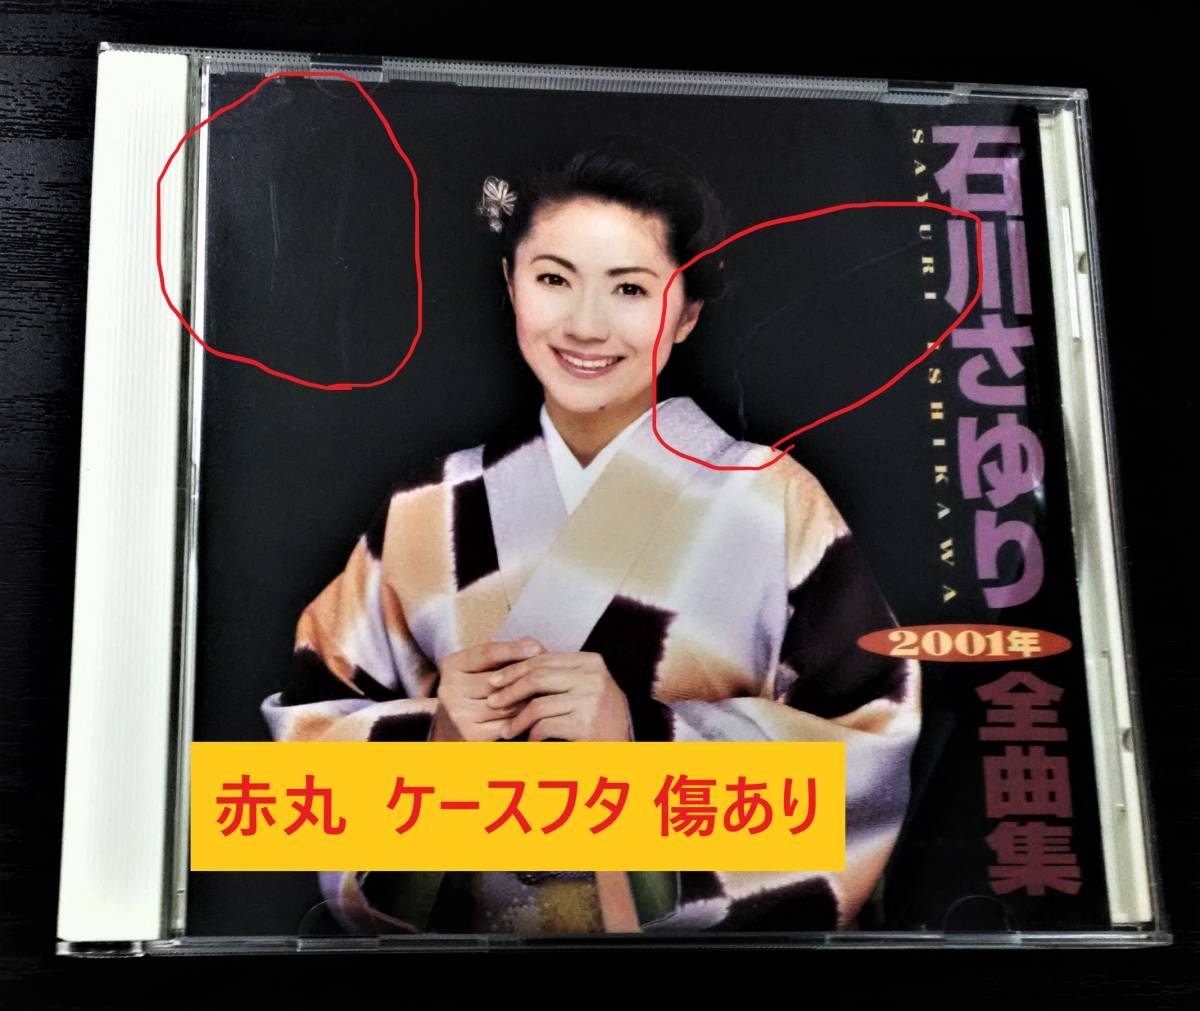  десять тысяч 1 08936 Ishikawa ...2001 год все сборник [CD альбом ] * карта текстов песен нет, кейс . царапина, Lee порожек . трещина есть 